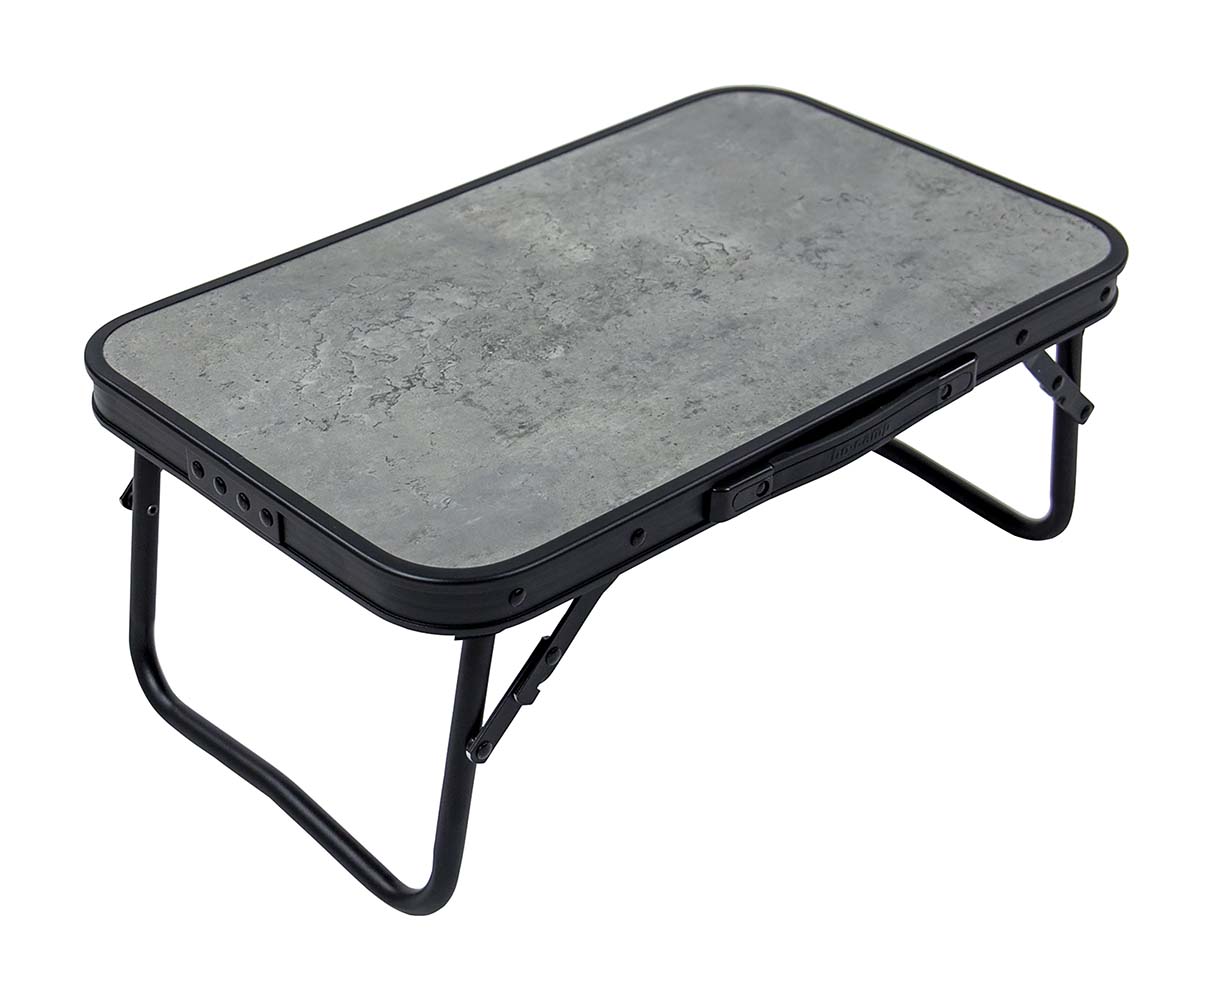 1404180 Una elegante mesa plegable de aluminio con aspecto industrial y tablero de aspecto de hormigón. La mesa es muy compacta de guardar gracias a sus patas plegables. Además, la mesa está equipada con una red bajo el tablero de MDF para guardar objetos.